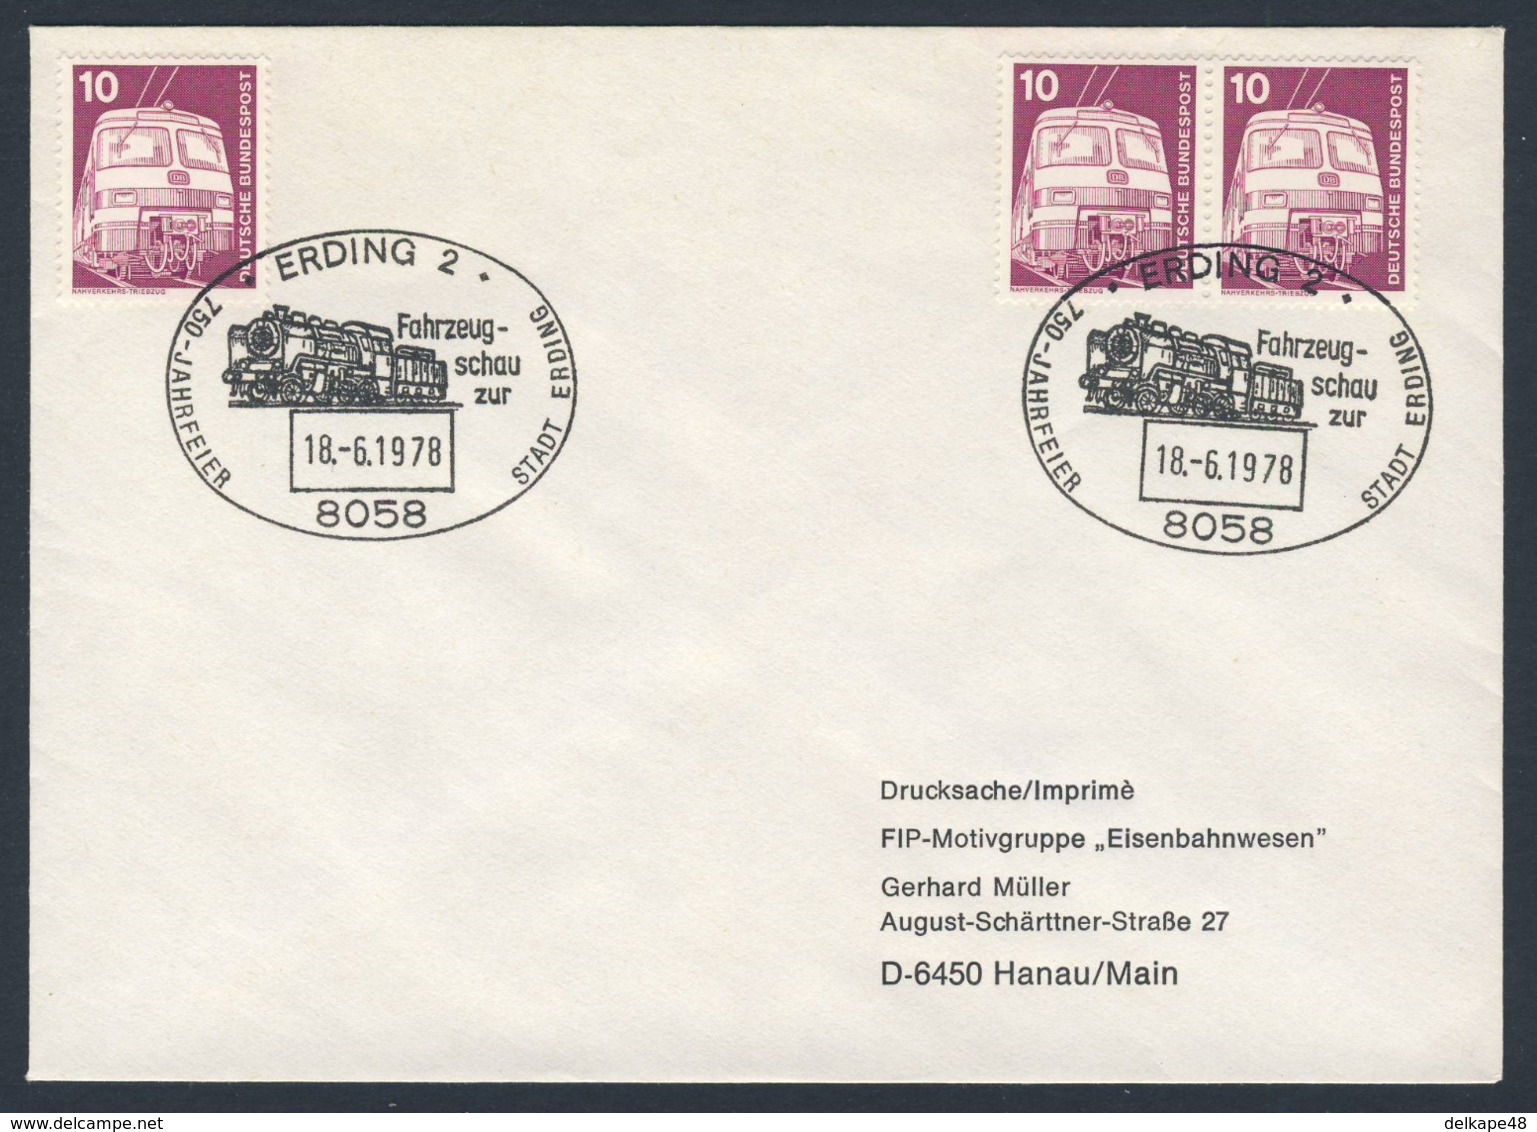 Deutschland Germany 1978 Cover / Brief / Enveloppe - Fahrzeugschau, Zur 750 Jahrfeire Stadt Erding / - Treinen